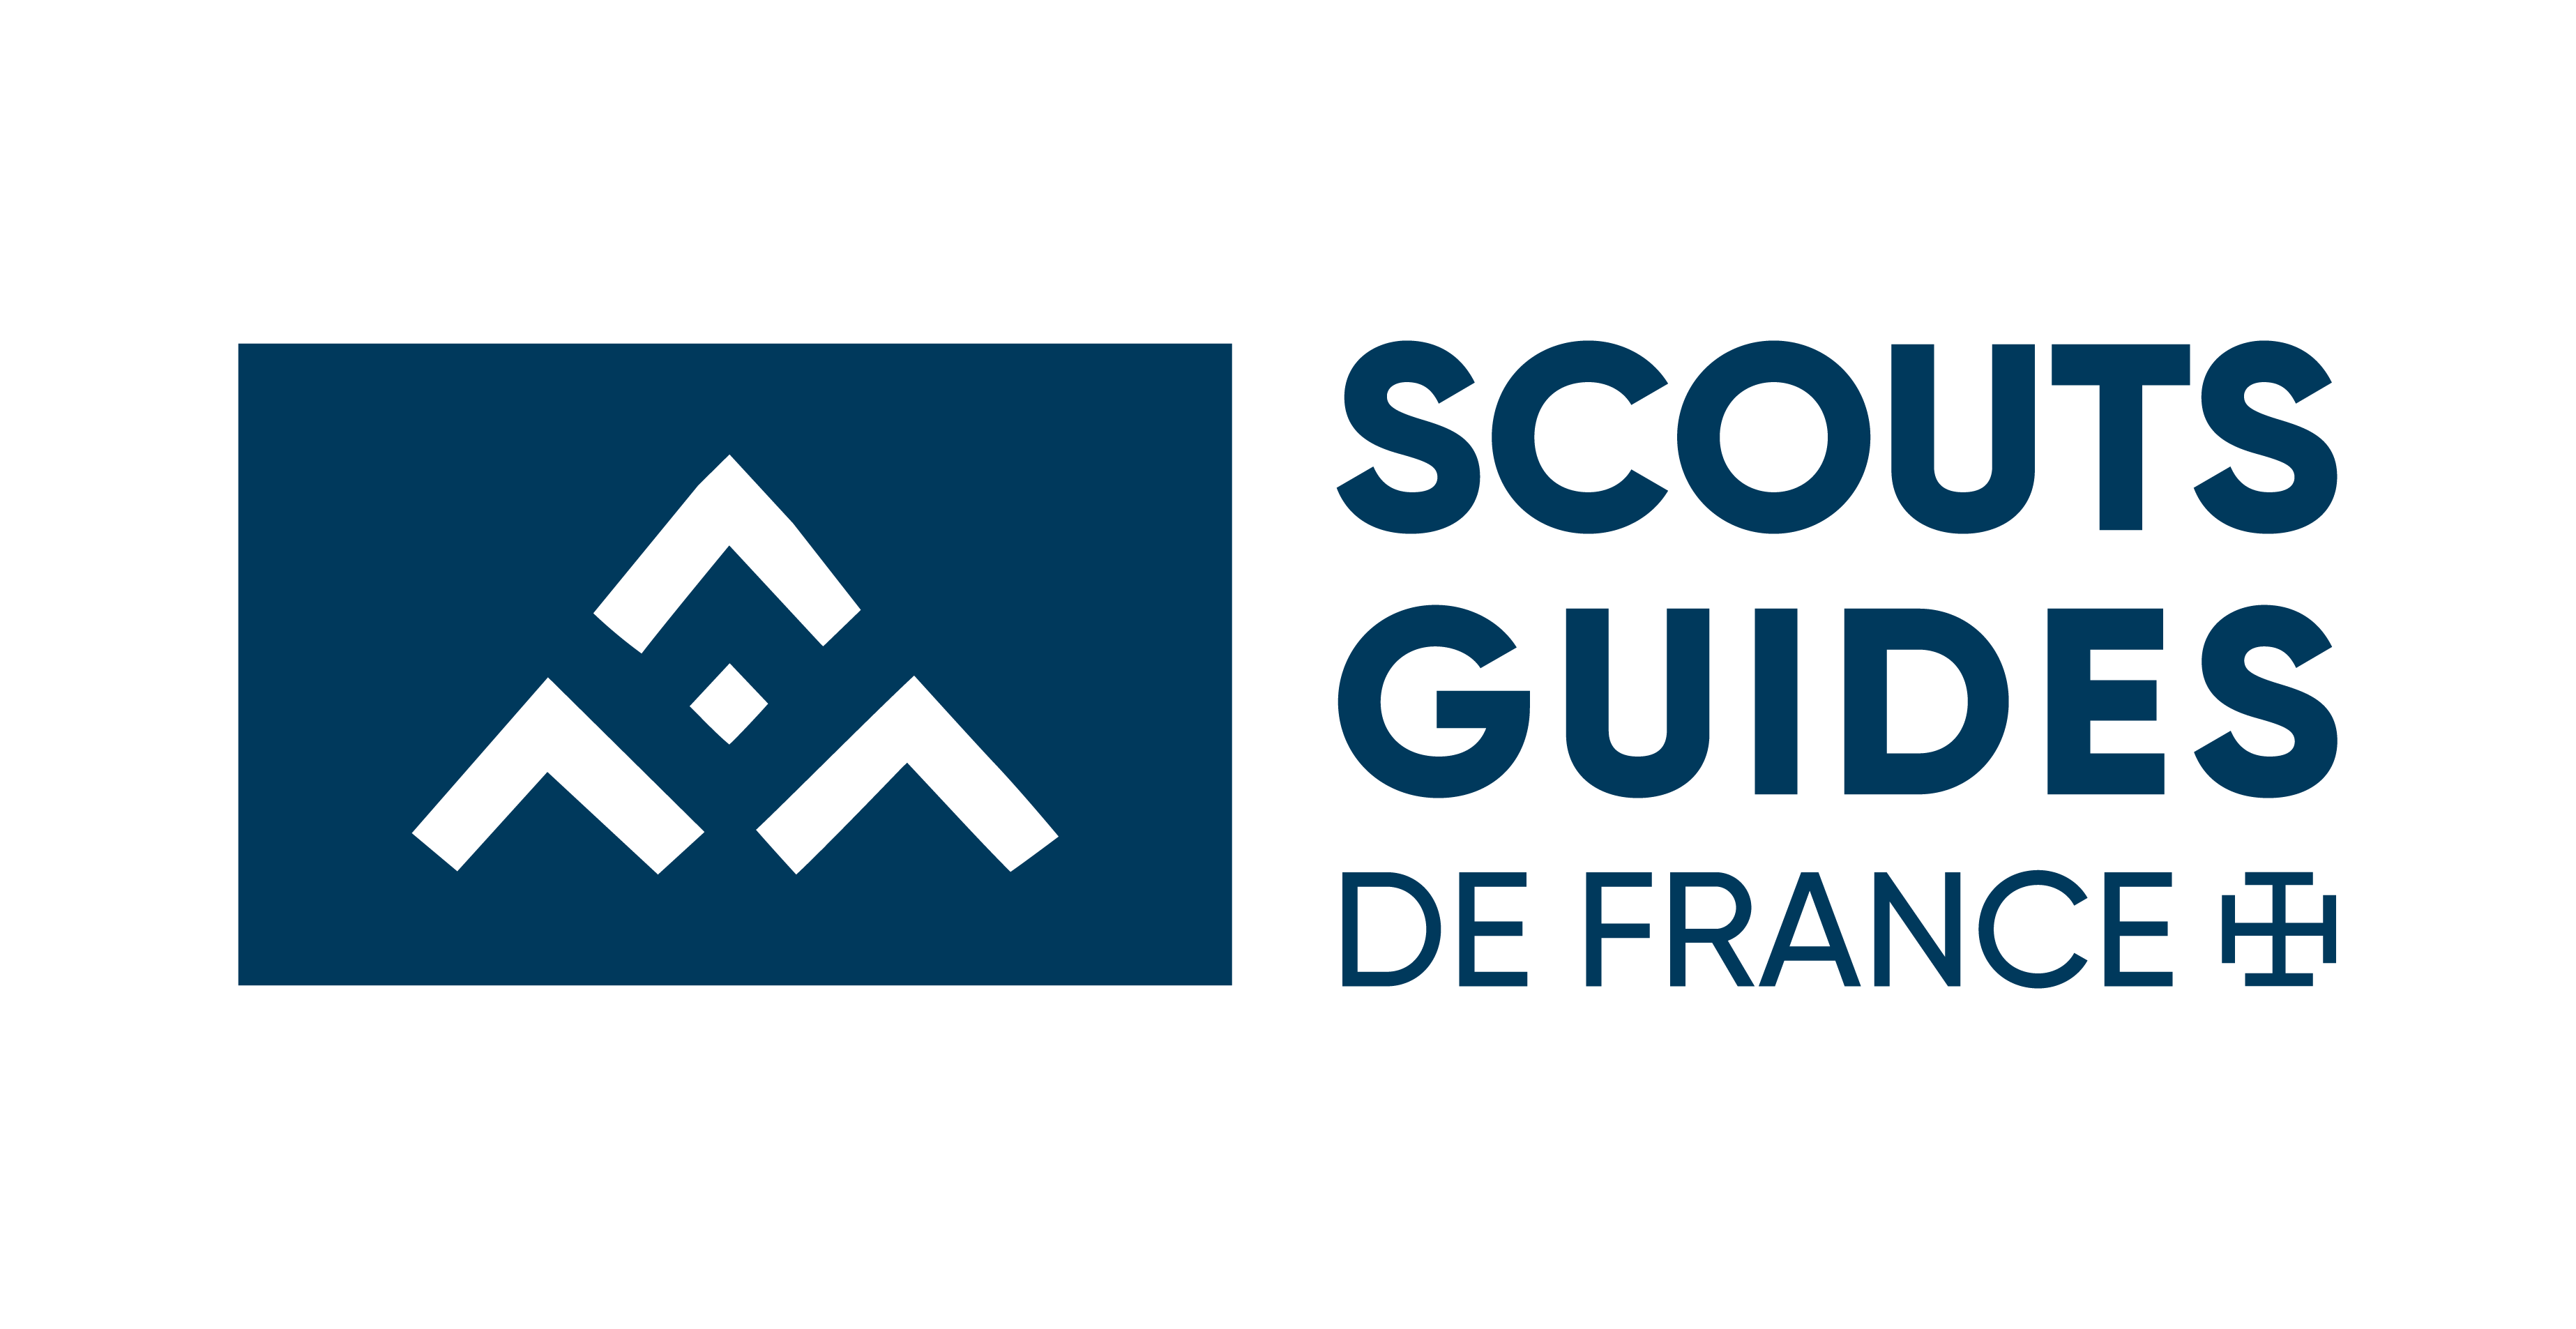 Journée mondiale du bénévolat - 5 décembre 2012. Scoutisme : un bénévolat à fortes valeurs ajoutées